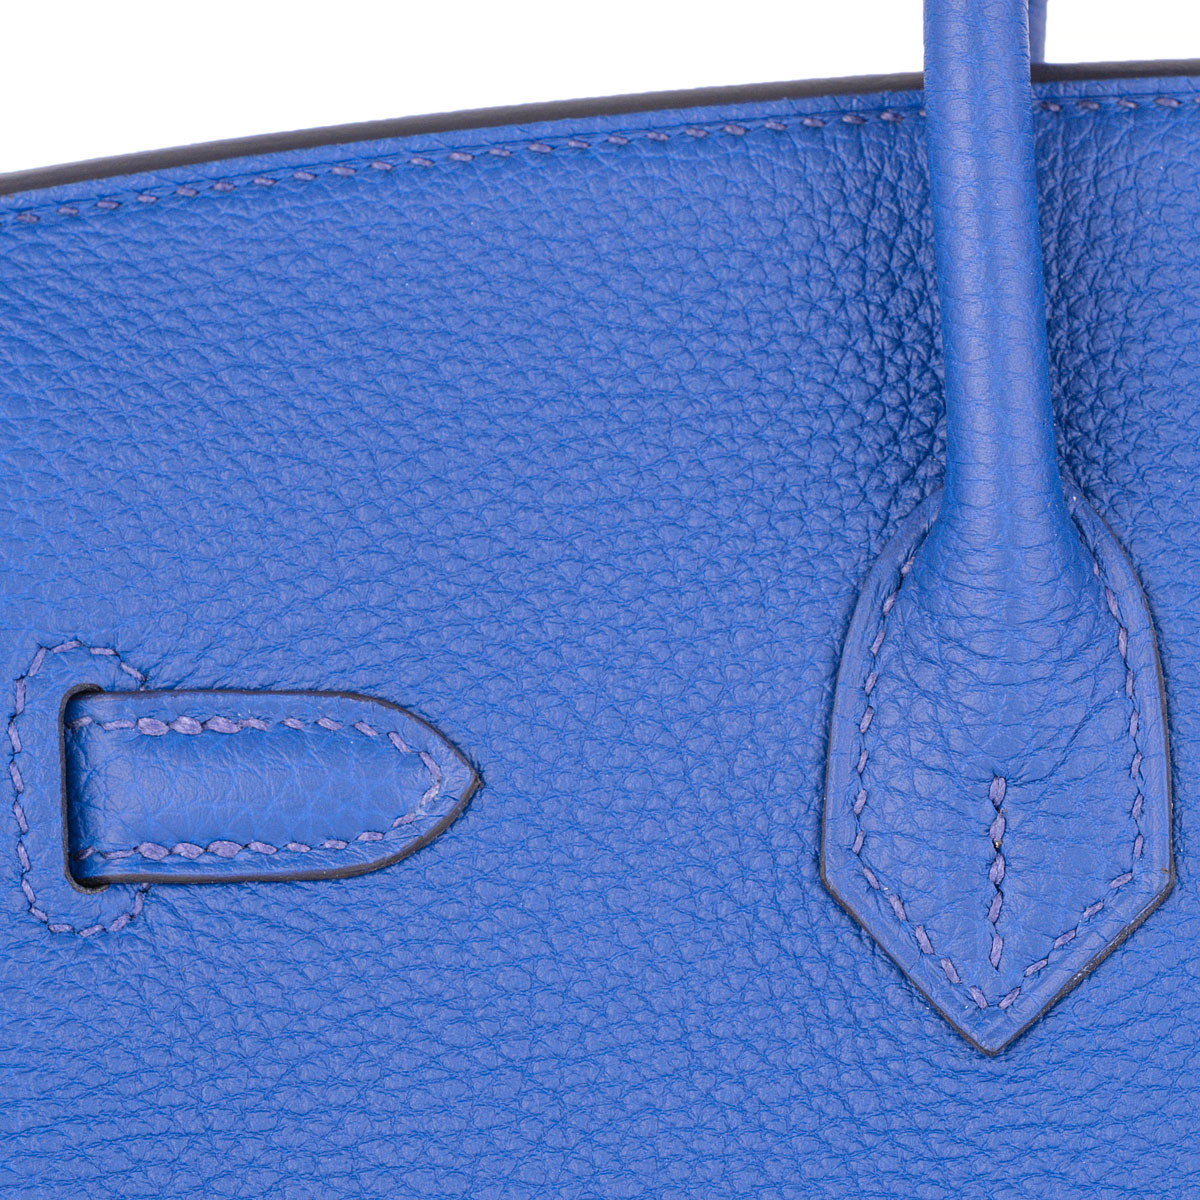 Hermes Birkin 30cm Bag Togo Calfskin Leather Gold Hardware, Blue